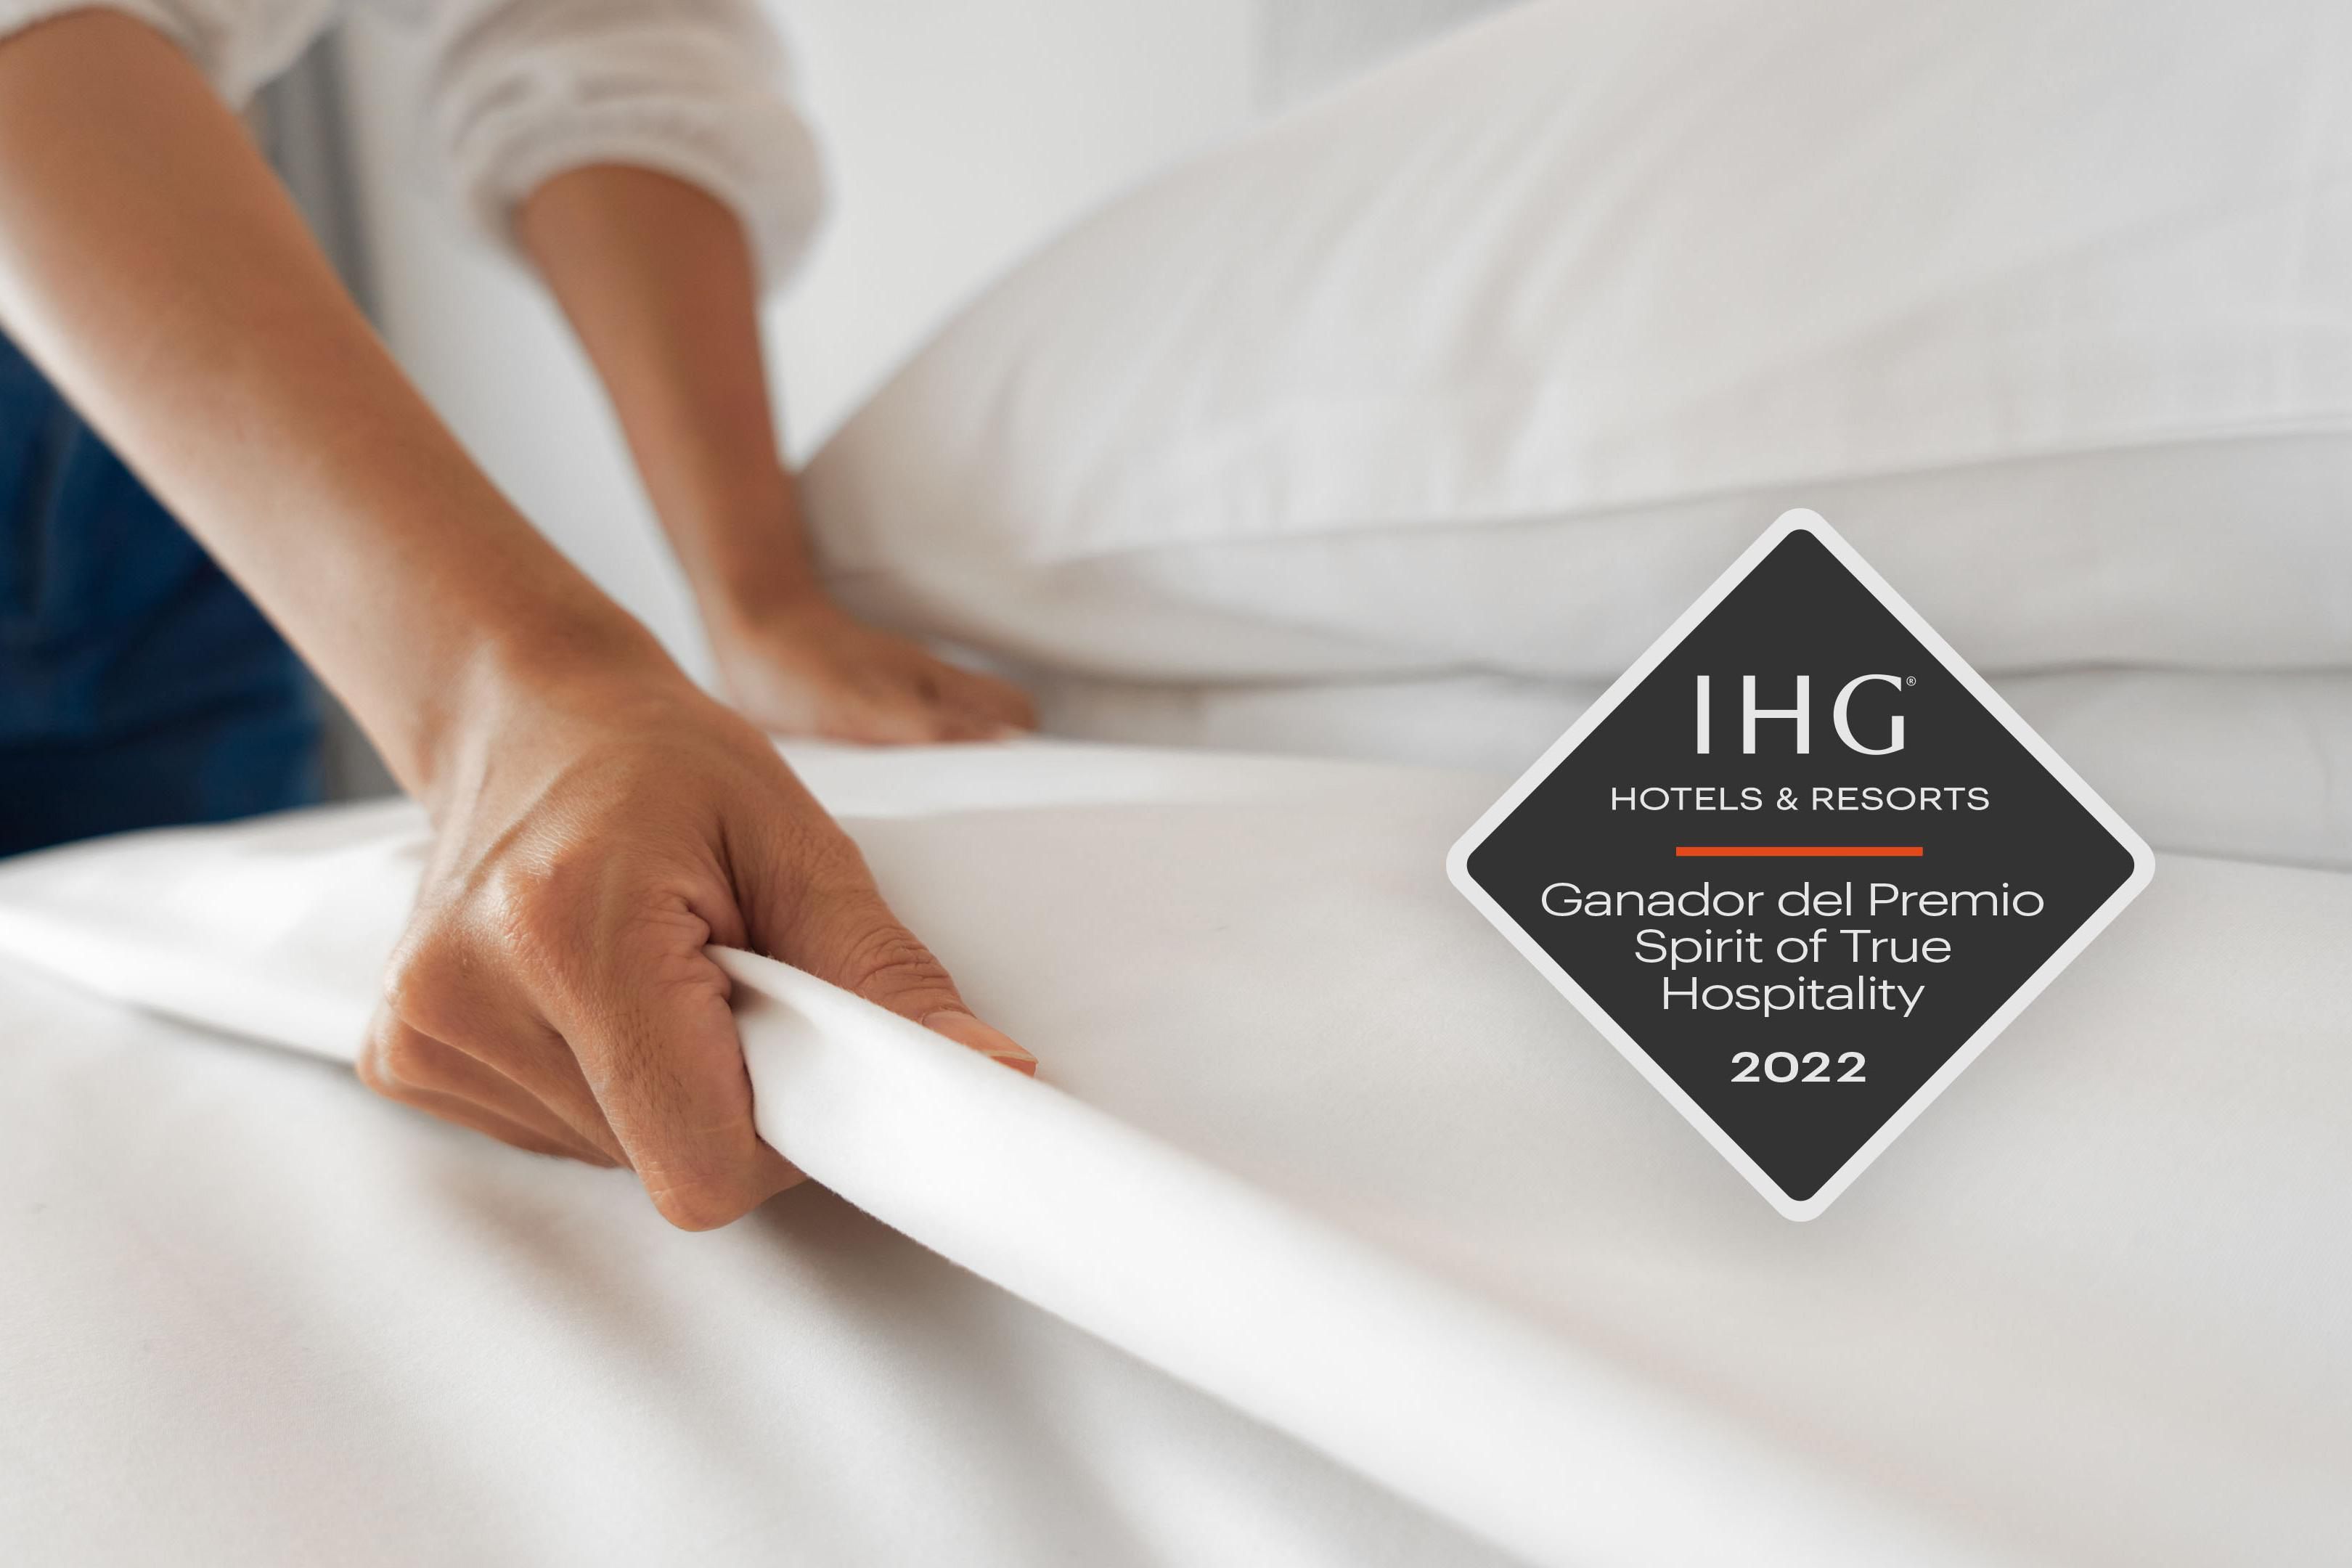 Este hotel fue reconocido entre los 4,000 hoteles IHG en las Américas por sus más altos niveles de excelencia en la calidad, satisfacción y limpieza